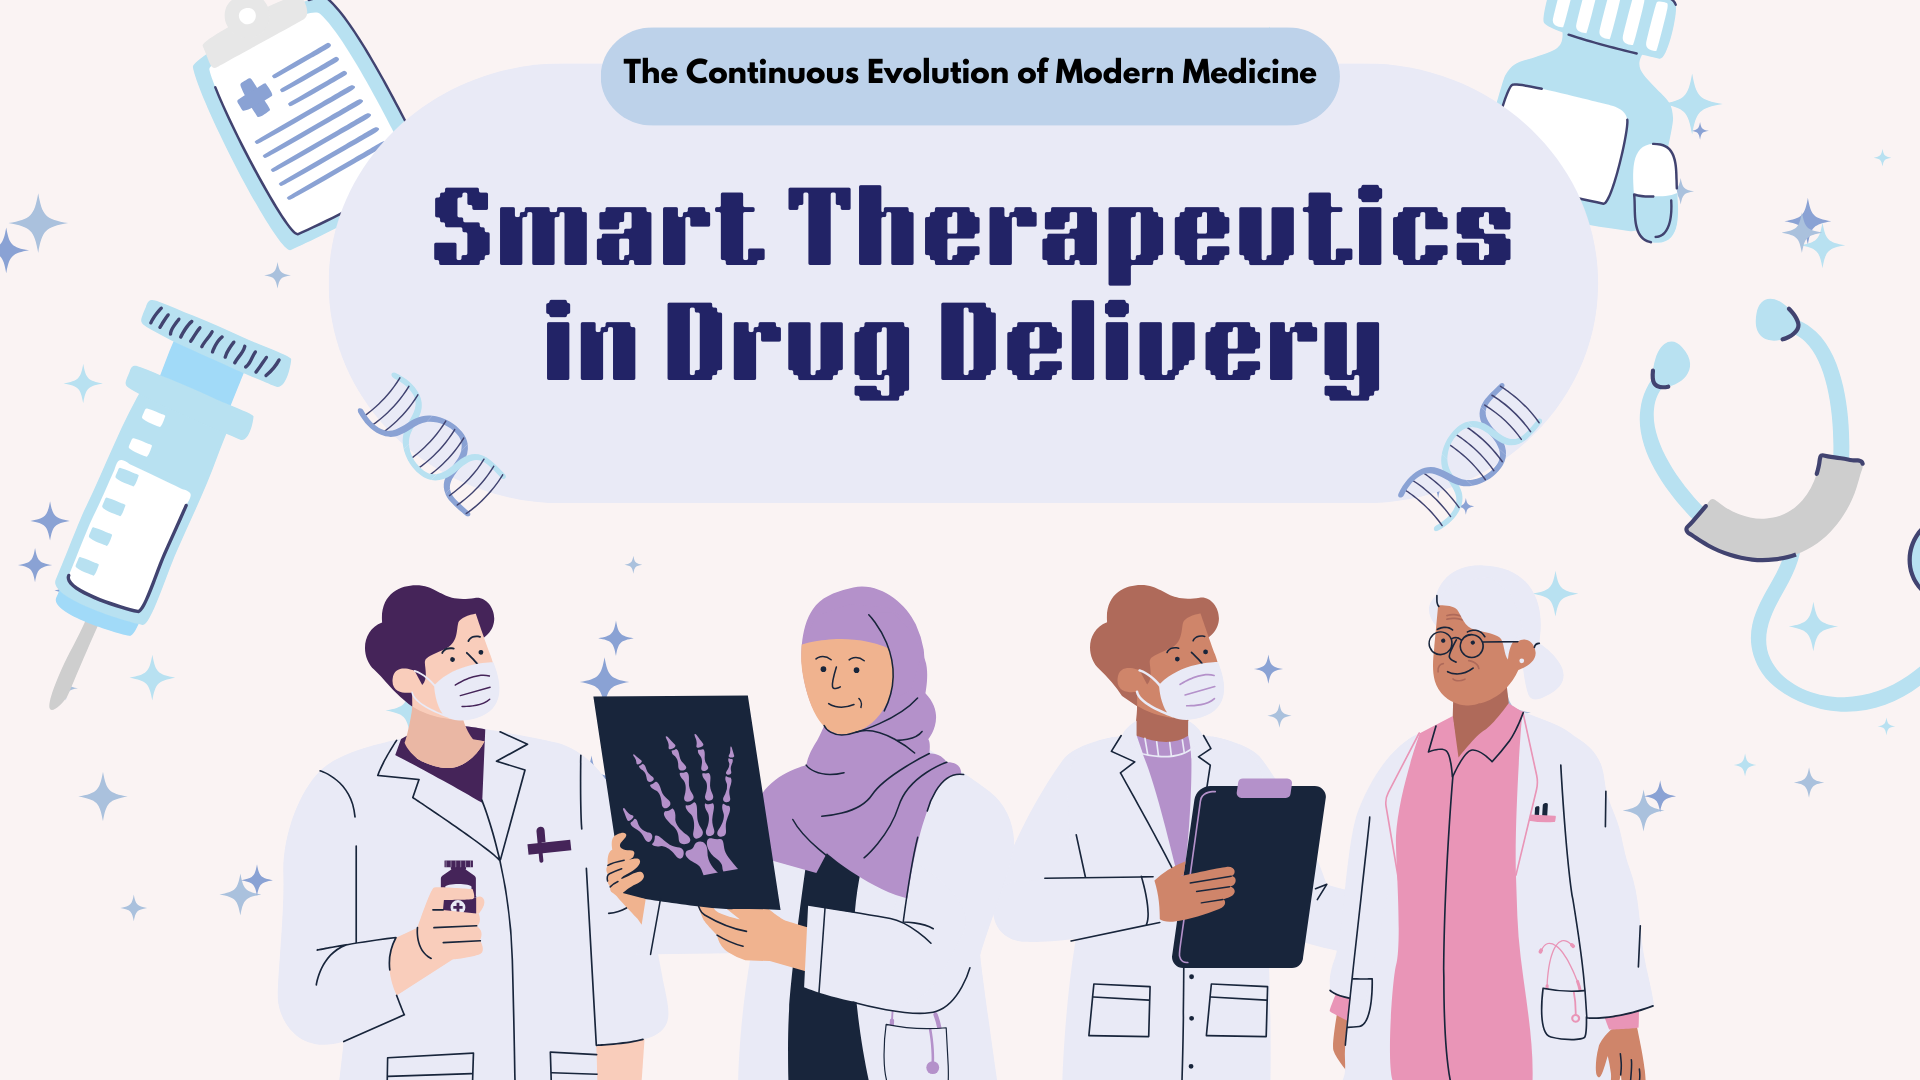 Blue Illustrative Innovations in Medicine Presentation